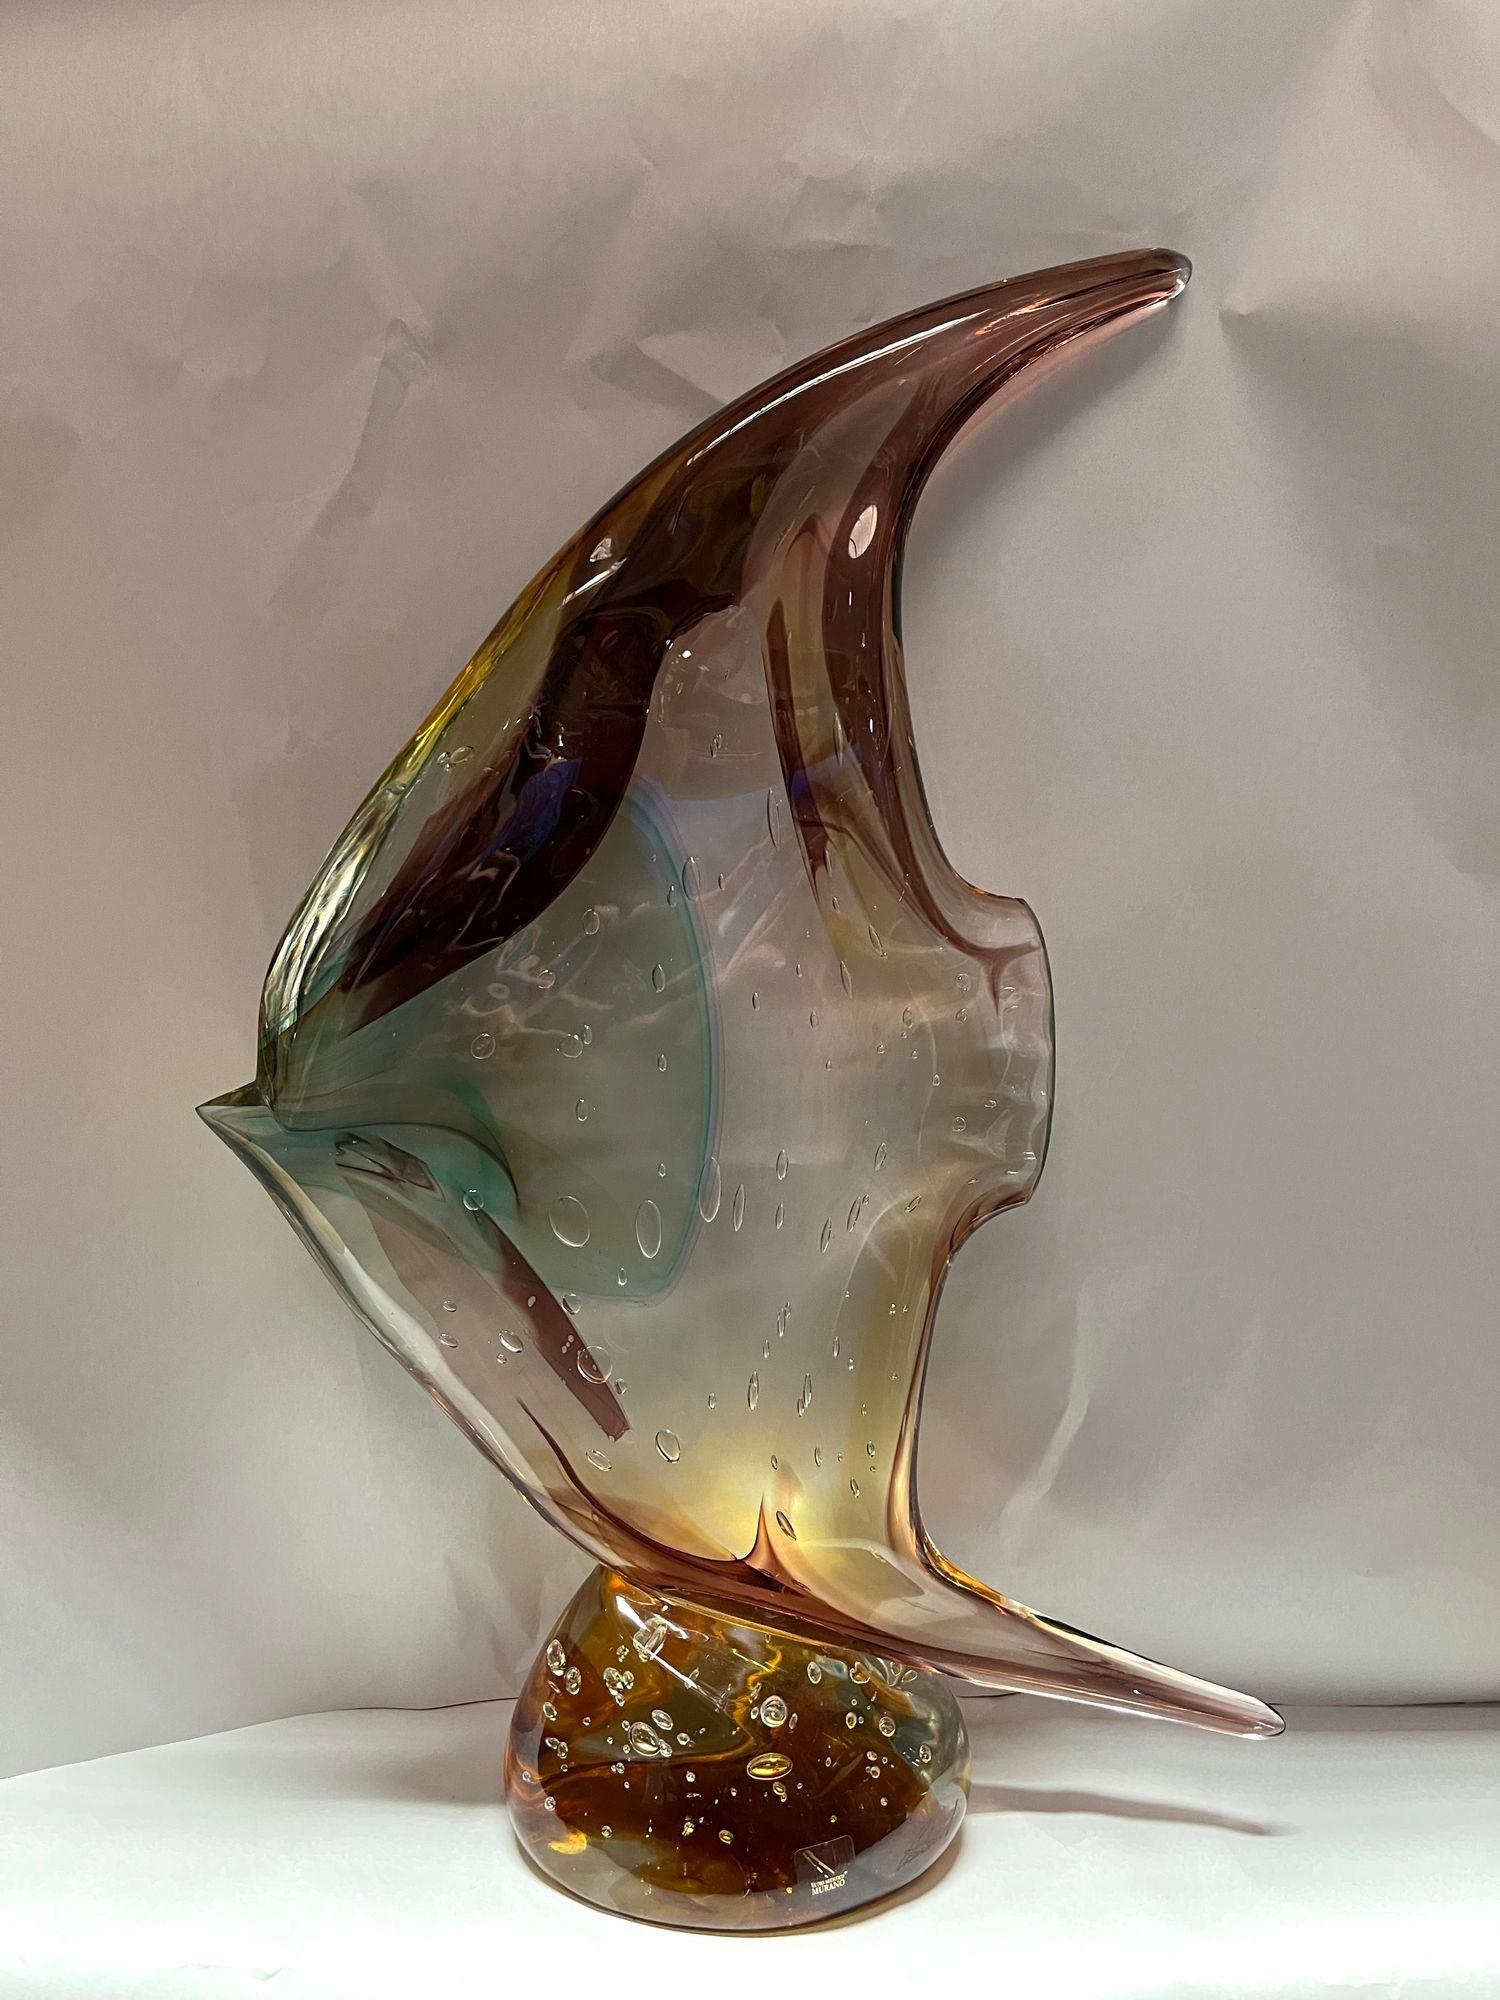 Sculpture de poisson en verre de Murano réalisée par Sergio Costantini pour Vetro Artistico Murano dans des tons bruns, ambrés, jaunes et bleus. Fabriqué en Italie, 20e siècle (avec autocollant et signature)
Dimensions :
20 